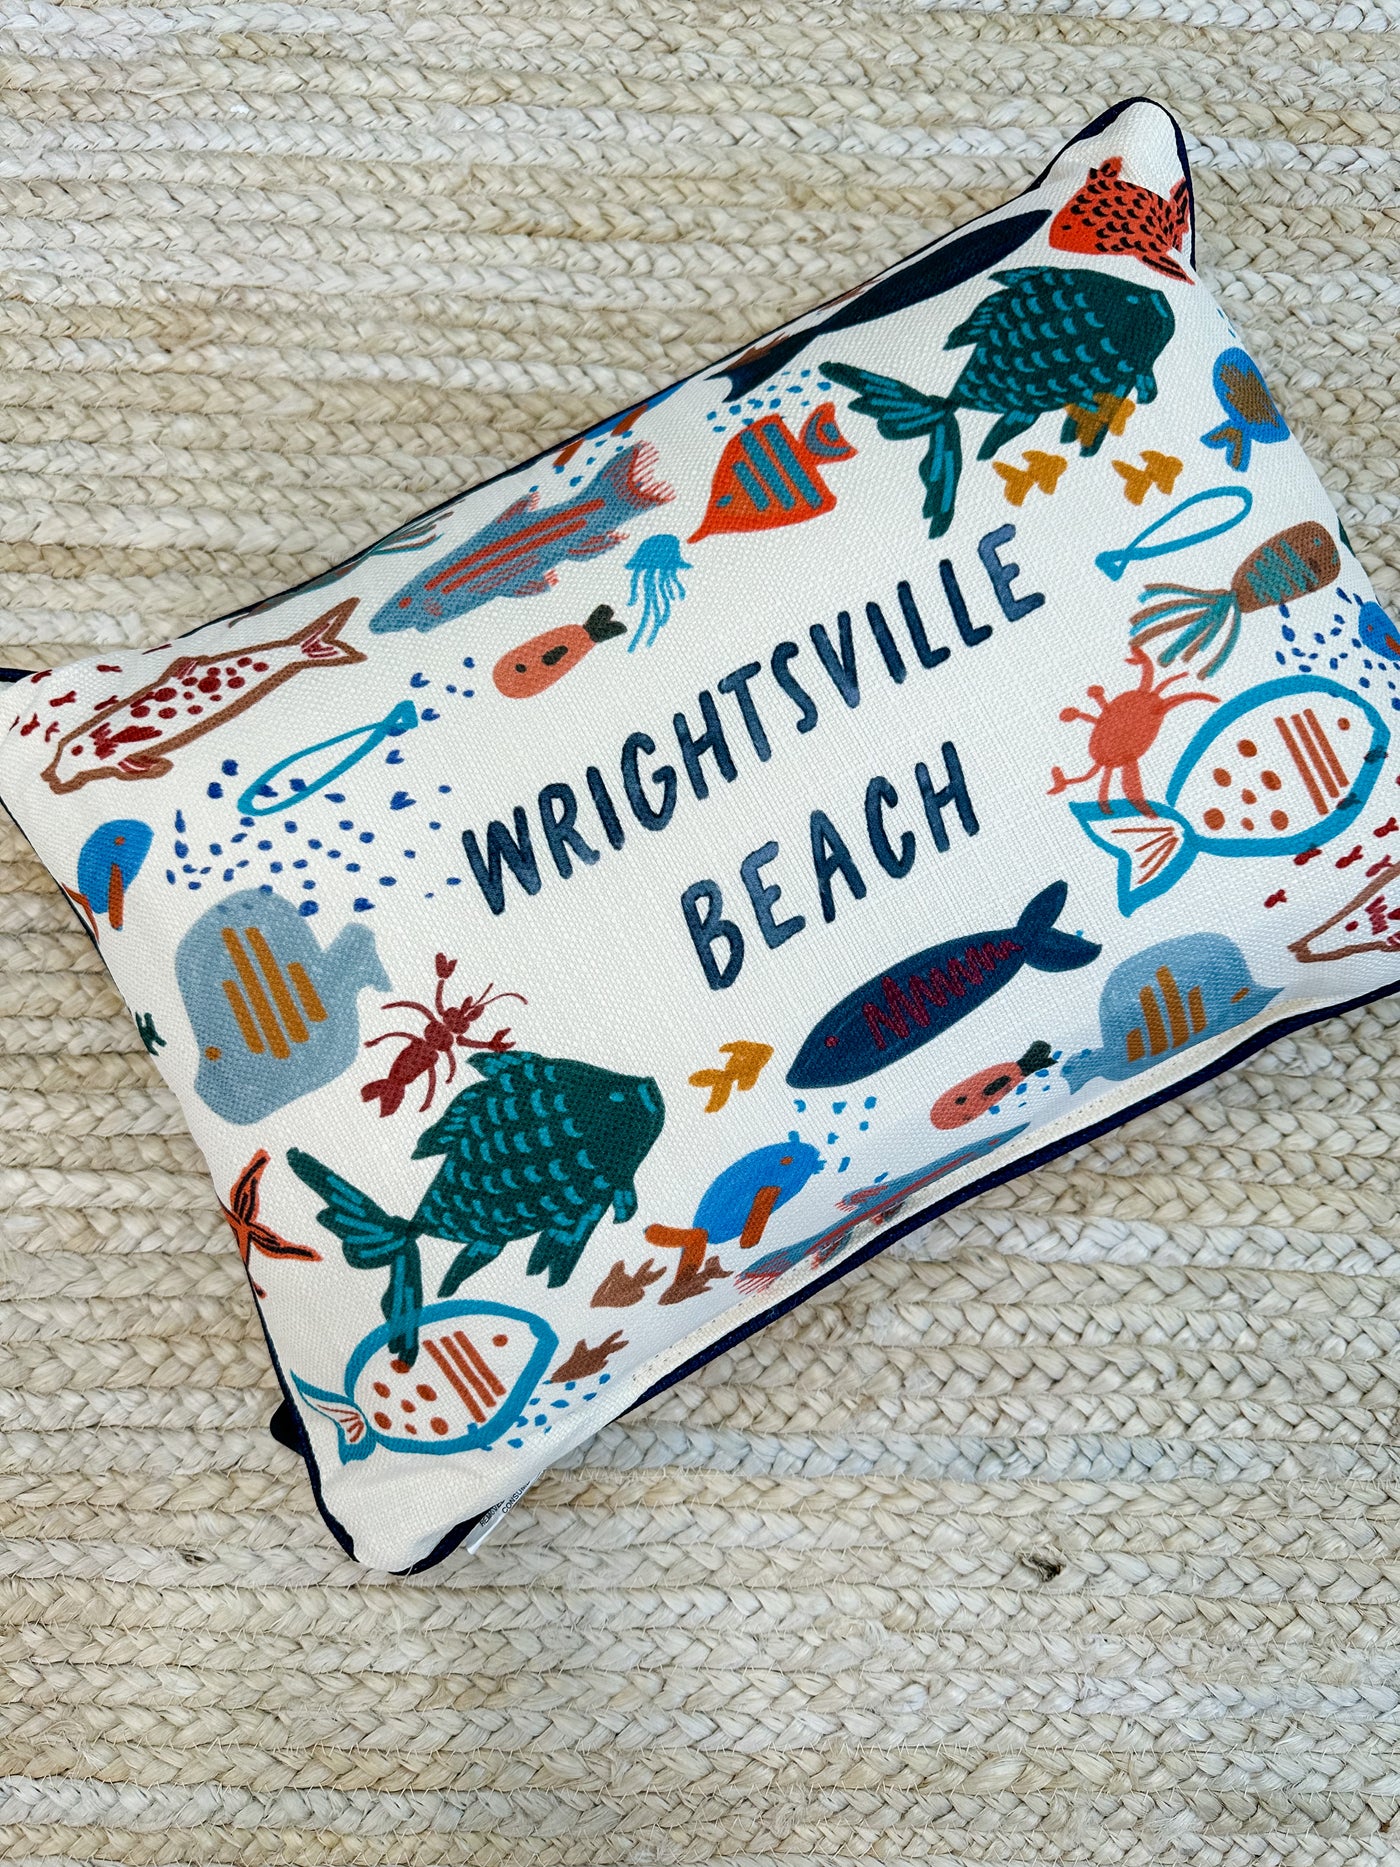 Swishy Fishy "Wrightsville Beach" Lumbar Pillow